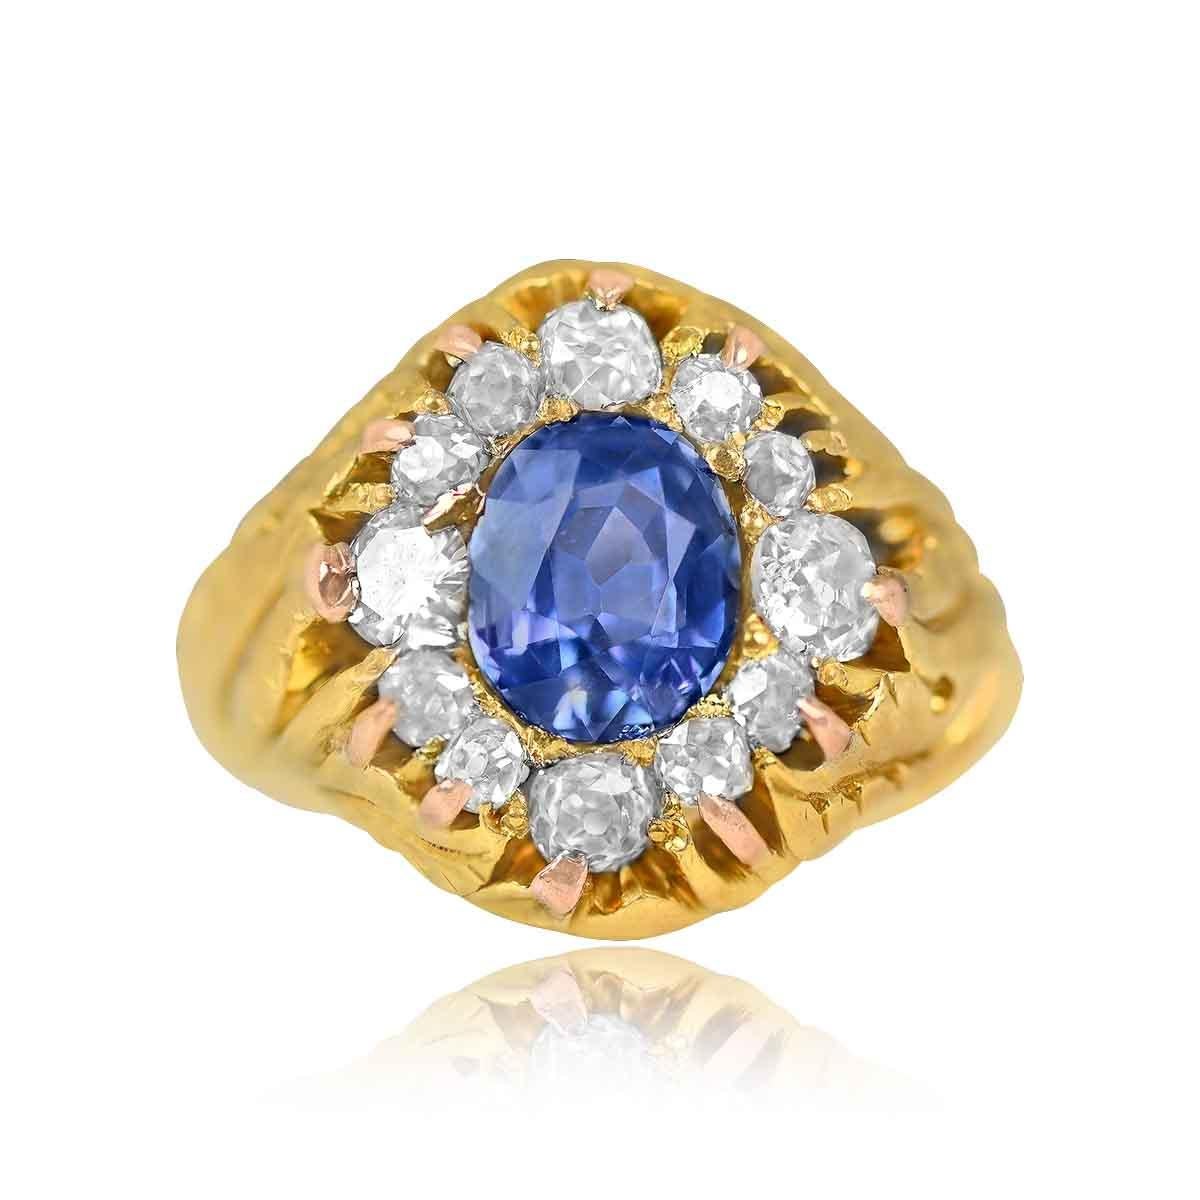 Exquisiter russischer Ring aus der viktorianischen Ära mit einem natürlichen kornblumenblauen Saphir von 3,00ct, umgeben von 13 Diamanten im alten Minenschliff.

Ringgröße: 6.5 US, anpassbar 
Metall: Gold, Gelbgold
Stein: Diamant,